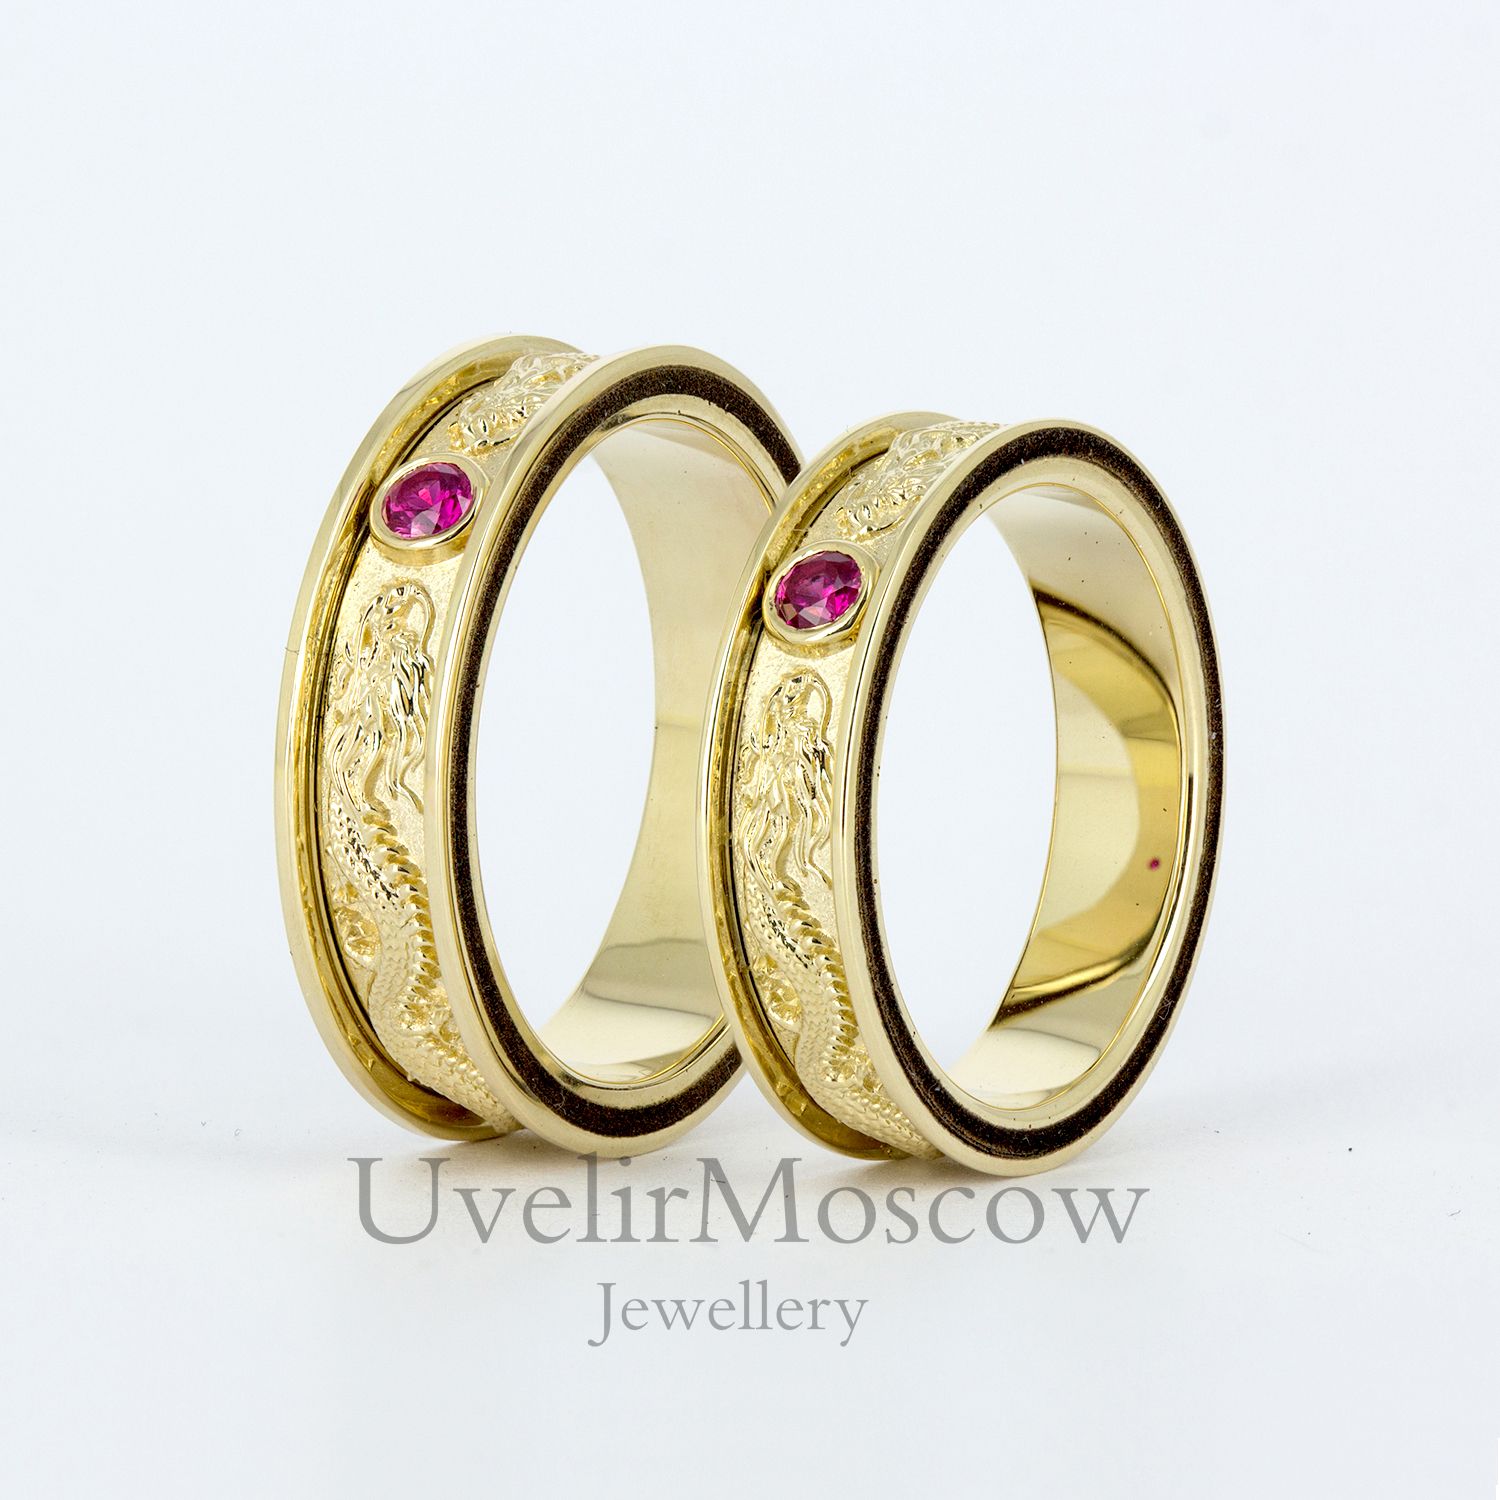 Обручальные кольца в восточном стиле с рубинами